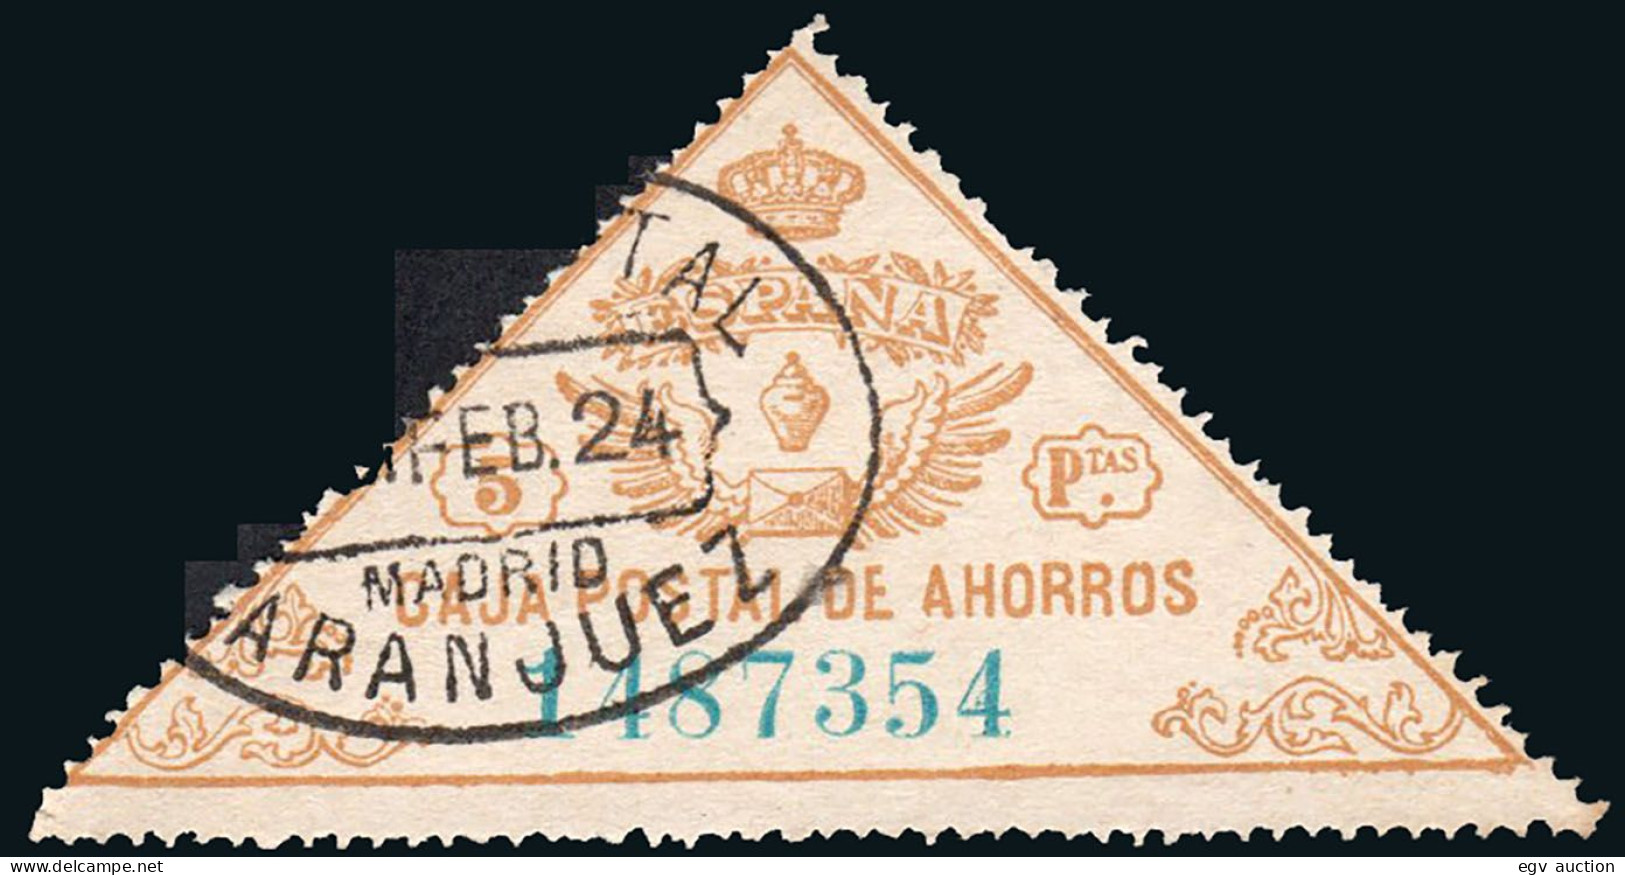 Madrid - Caja Postal Ahorros - Gálvez 5 - Mat "Giro Postal - Aranjuez" - Steuermarken